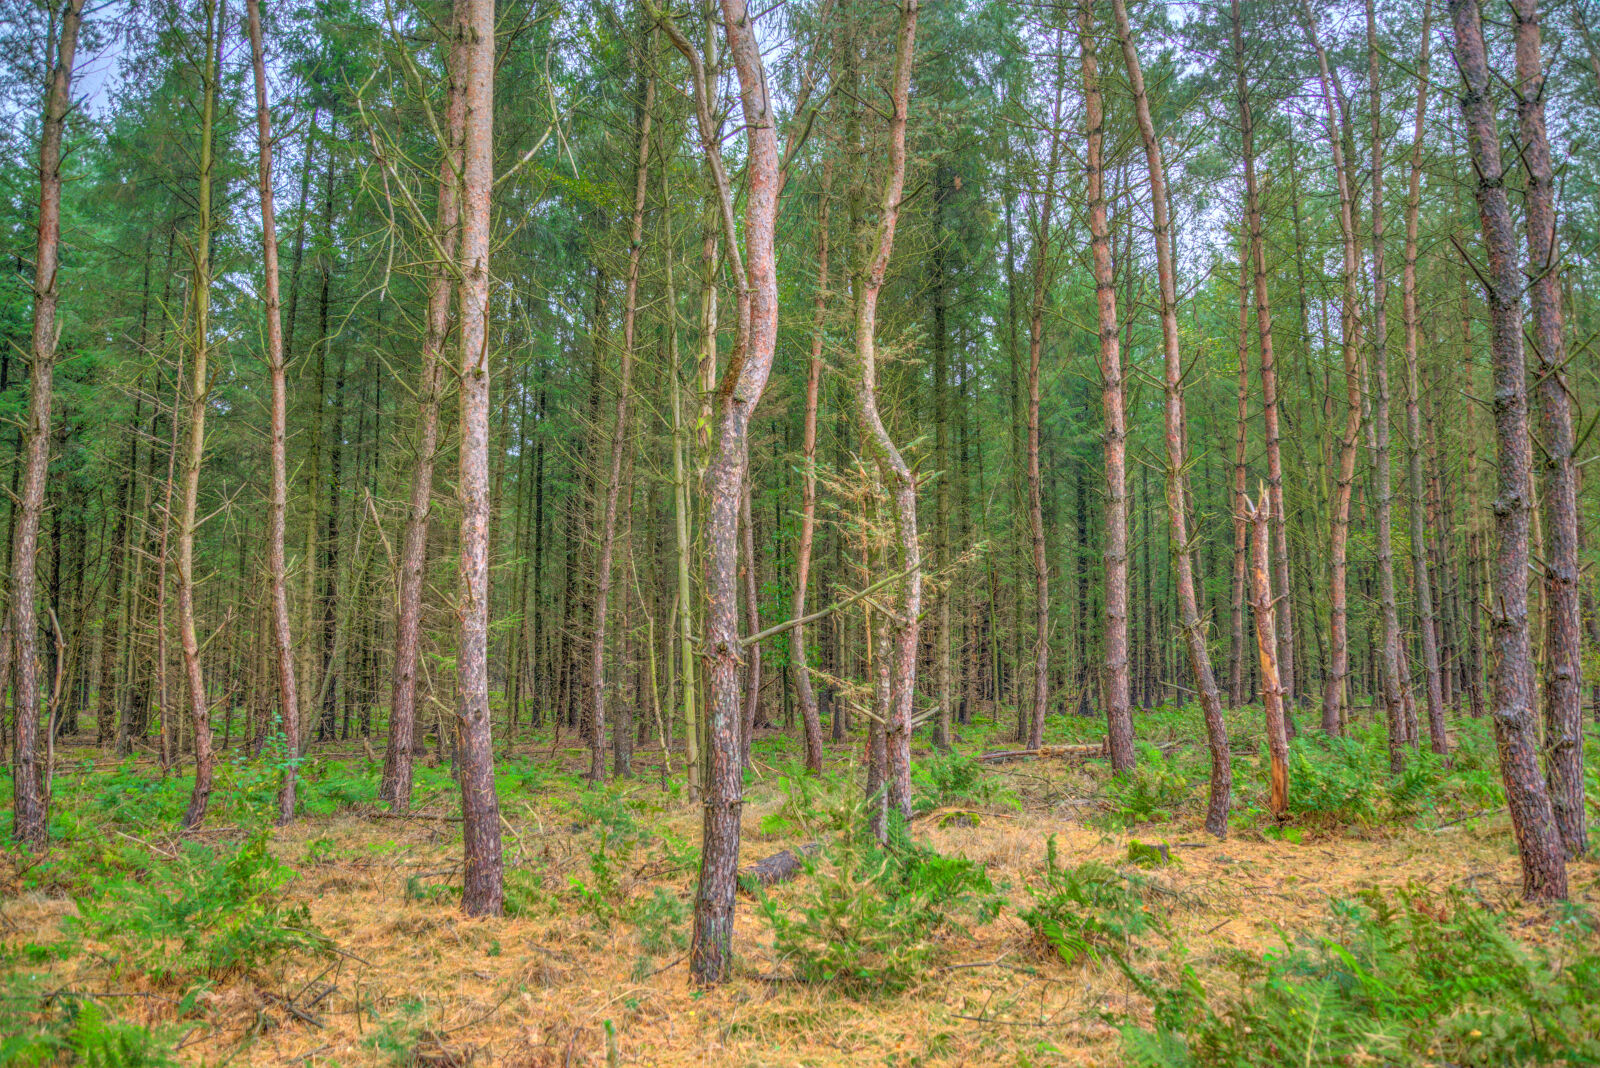 Nikon AF-S Nikkor 24-85mm F3.5-4.5G ED VR sample photo. Forest, landscape, lumber, natural photography